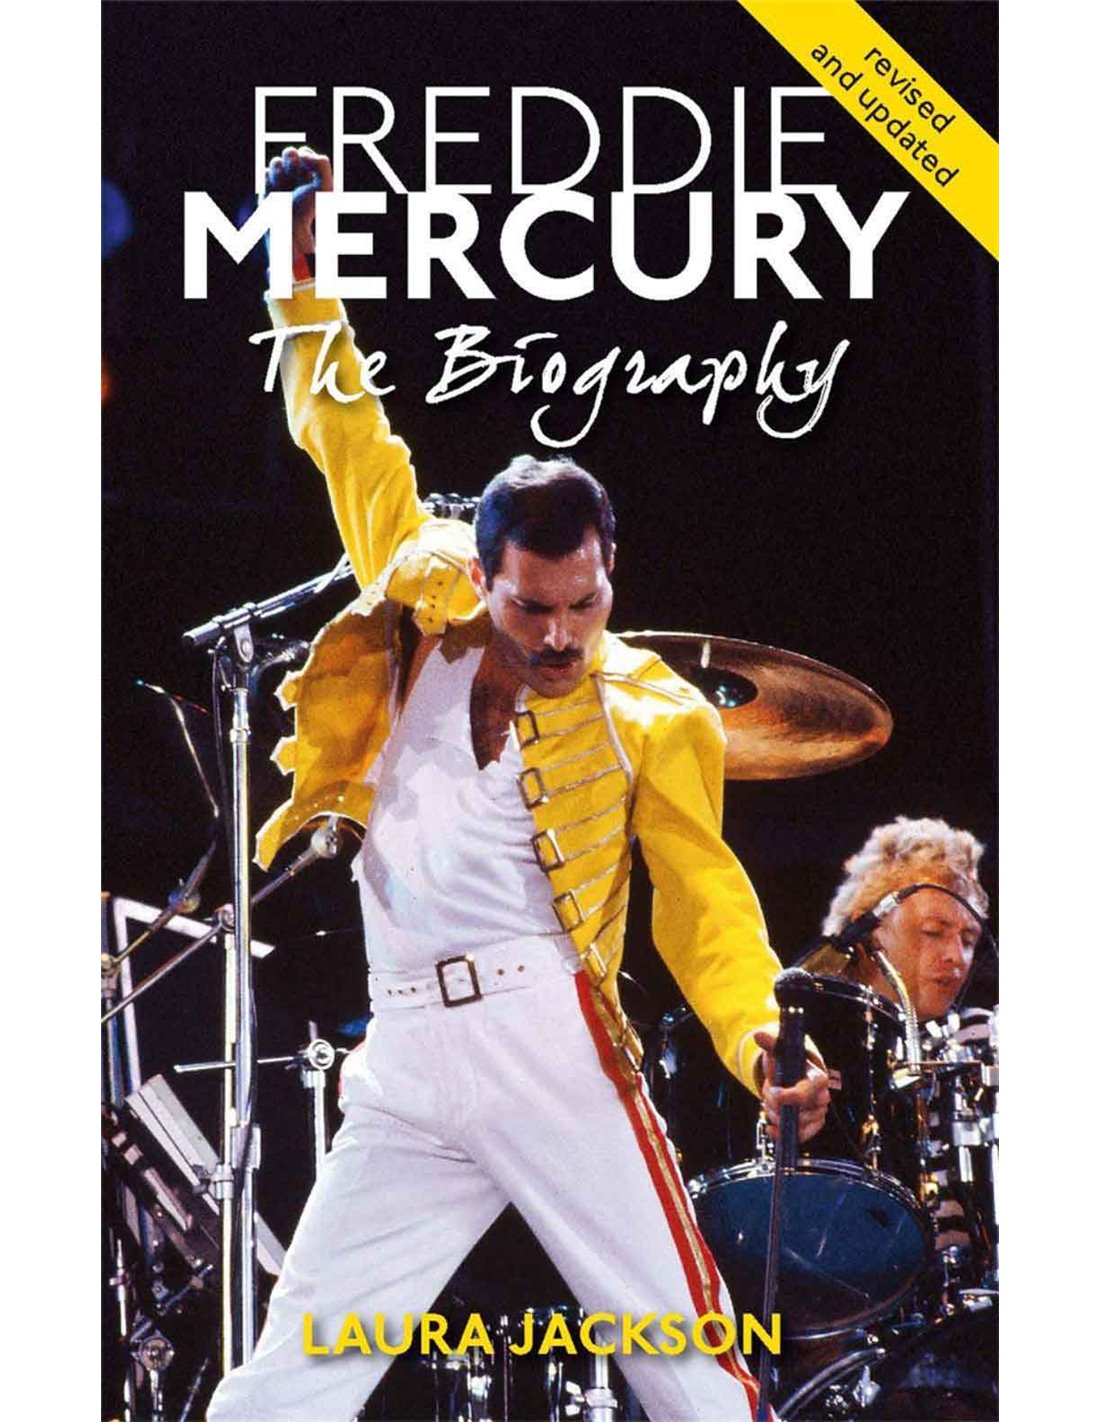 freddie mercury the definitive biography